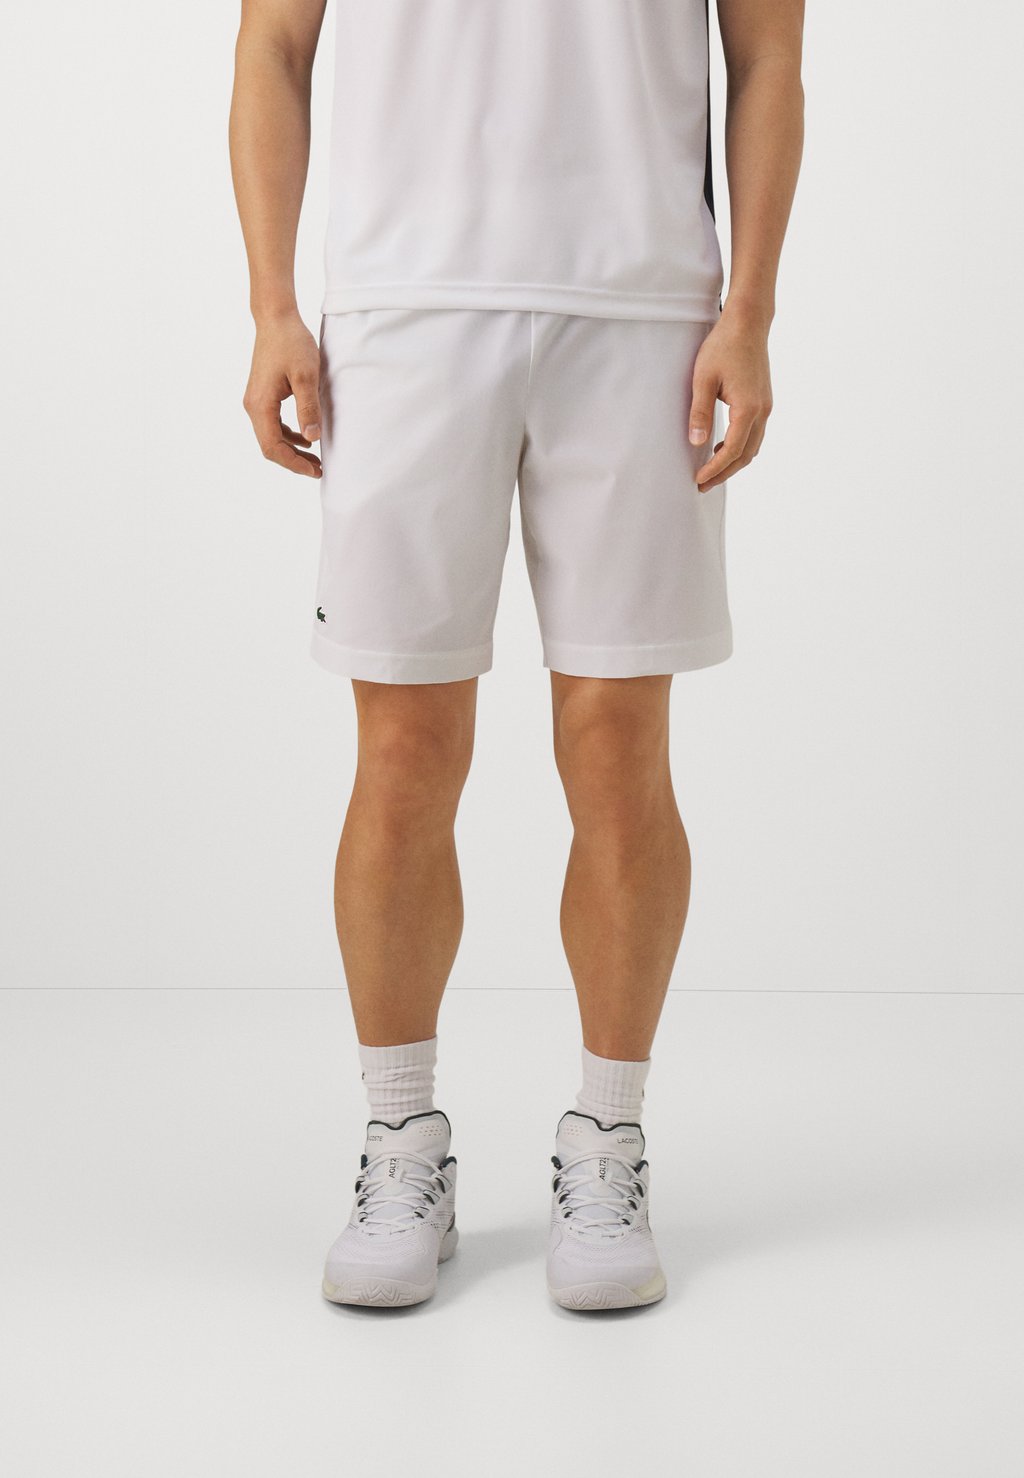 Спортивные шорты Sports Shorts Lacoste, белый спортивные шорты tennis shorts heritage lacoste белый